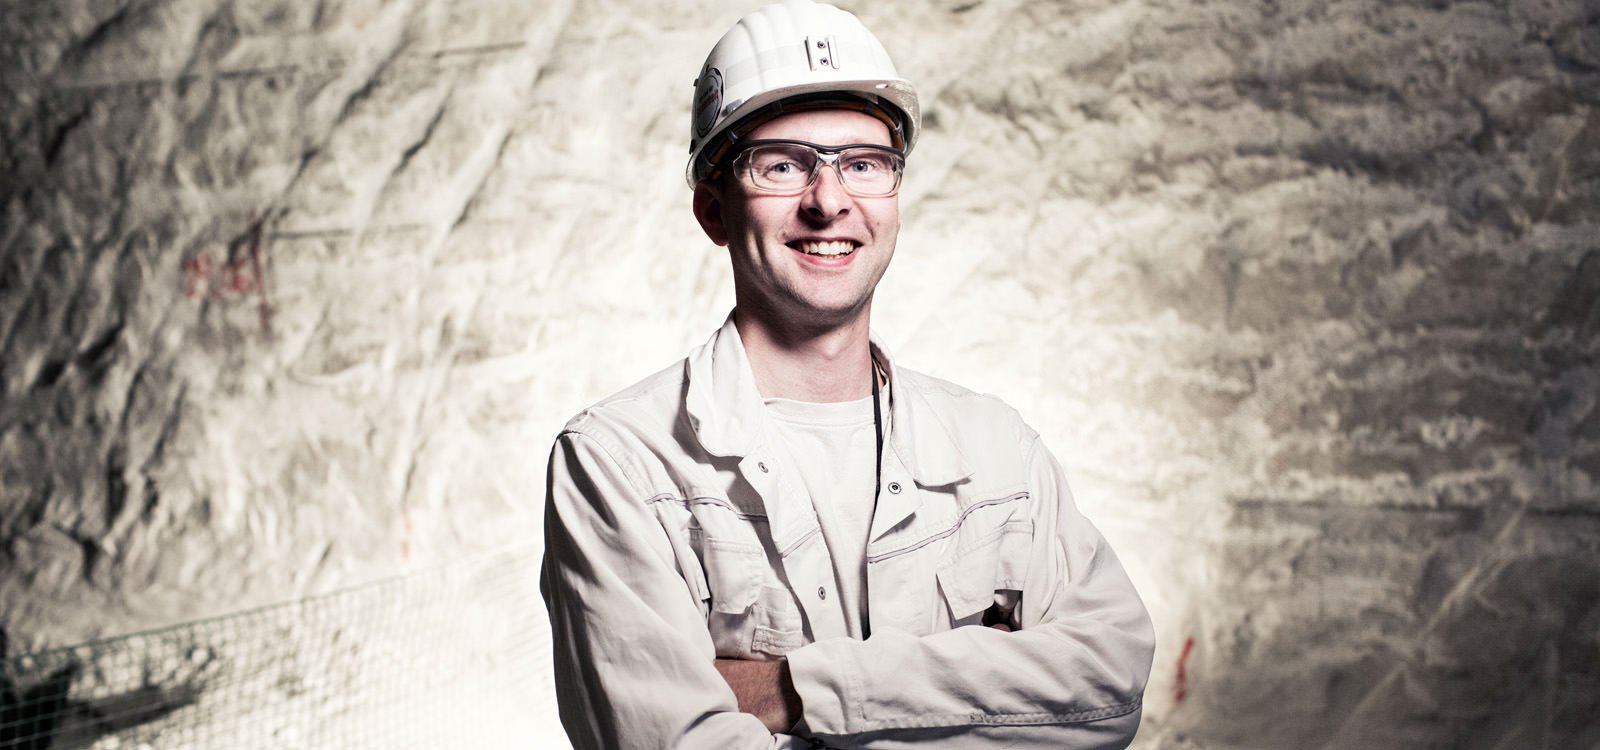 <p>Od dwóch lat Hans-Martin Müller jest odpowiedzialny za prace wydobywcze pod ziemią w kopalni soli Bernburg w Niemczech.</p>
